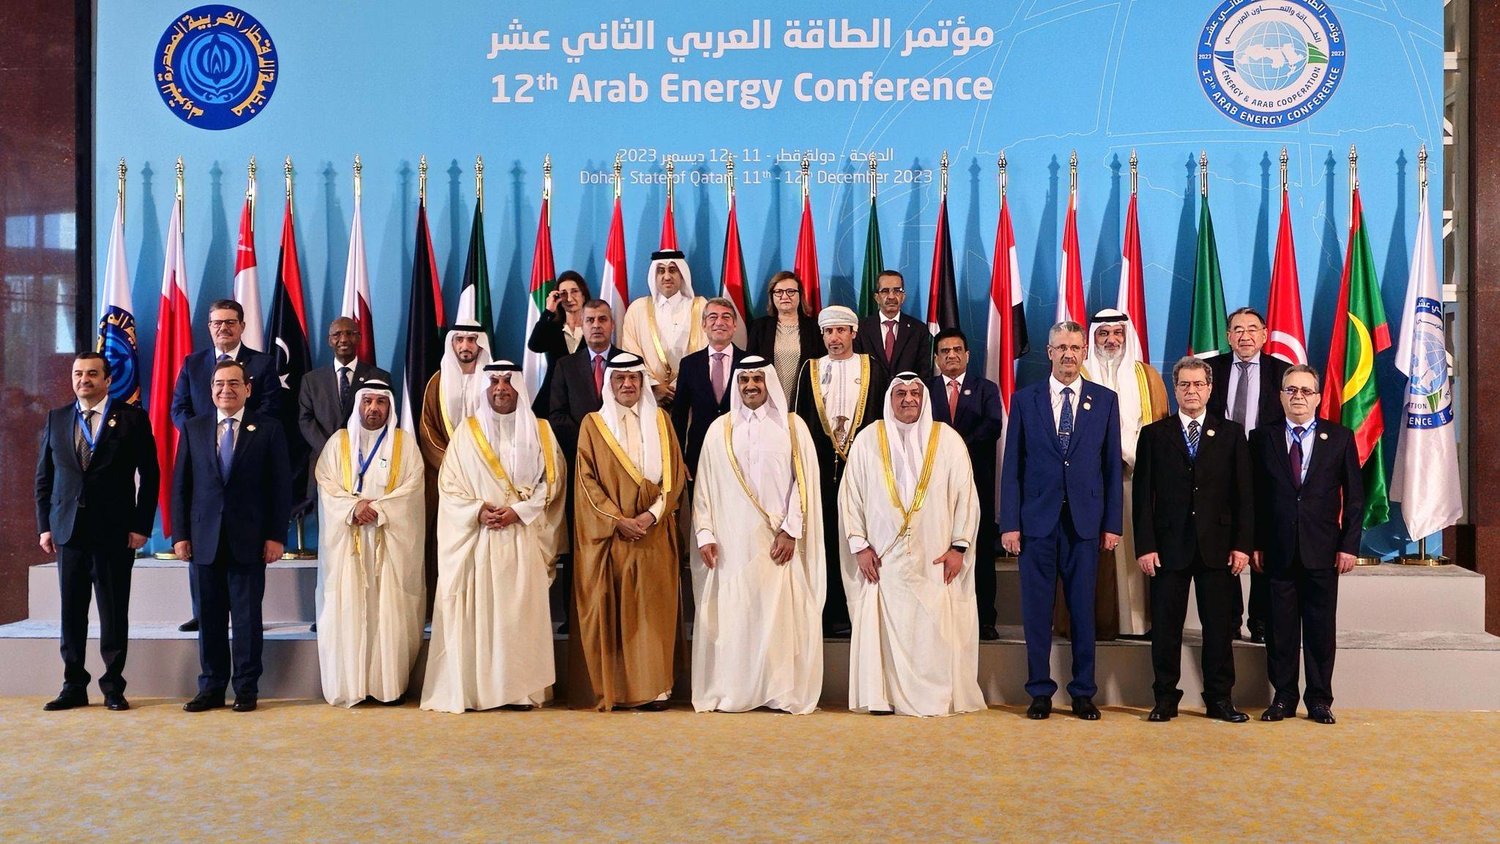 قطر تستضيف مؤتمر الطاقة العربي